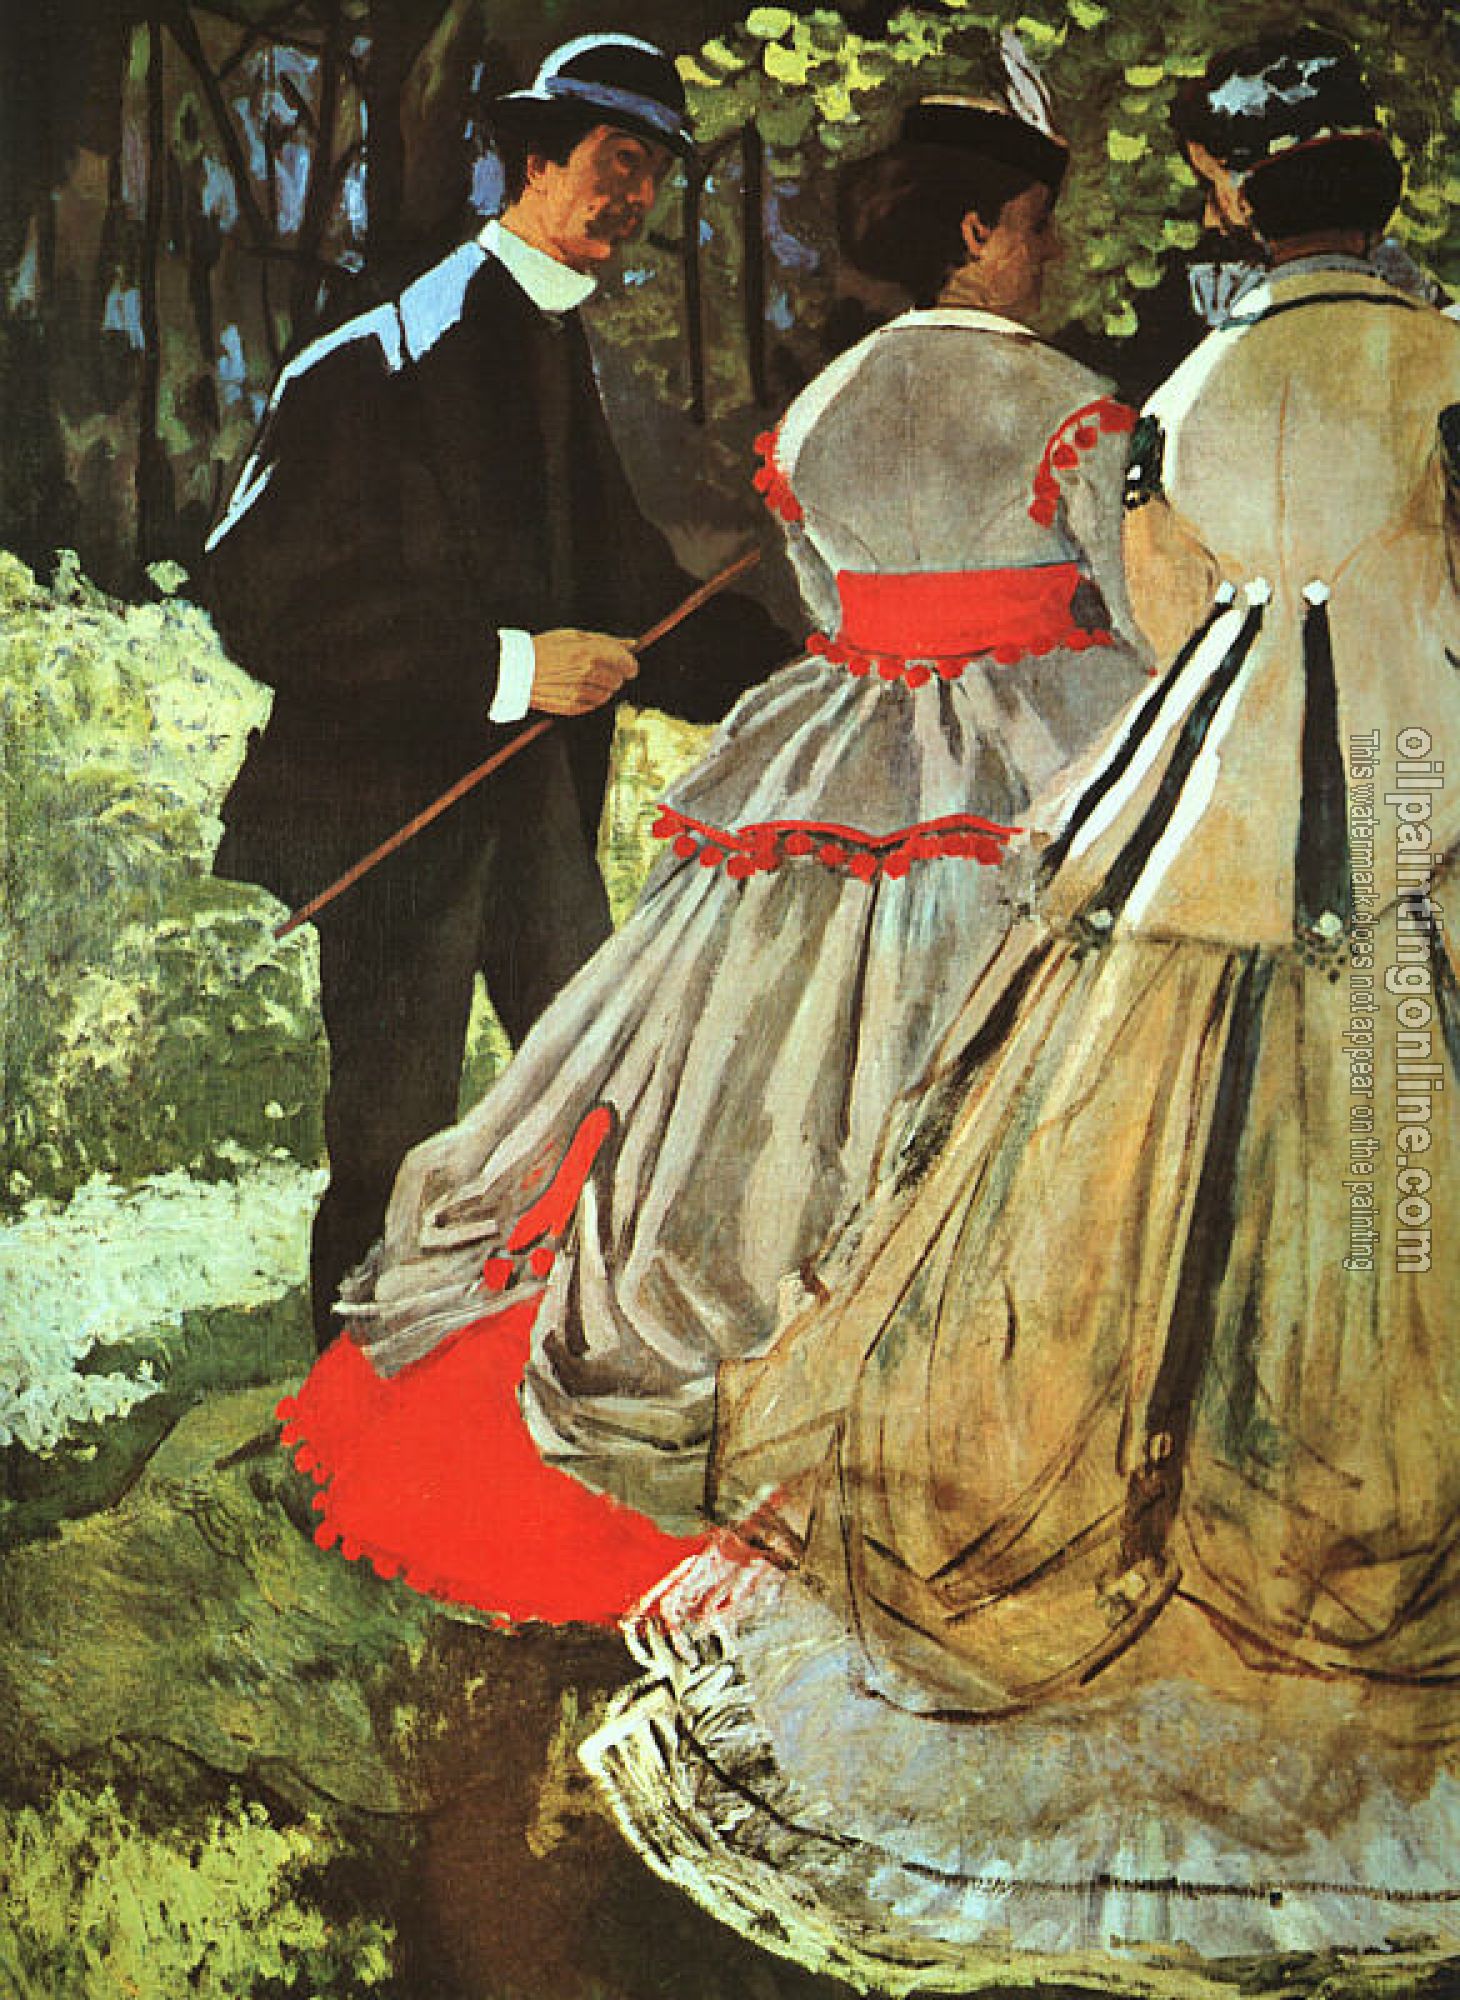 Monet, Claude Oscar - Le Deeuner sur l'Herbe, Translated title: The Picnic